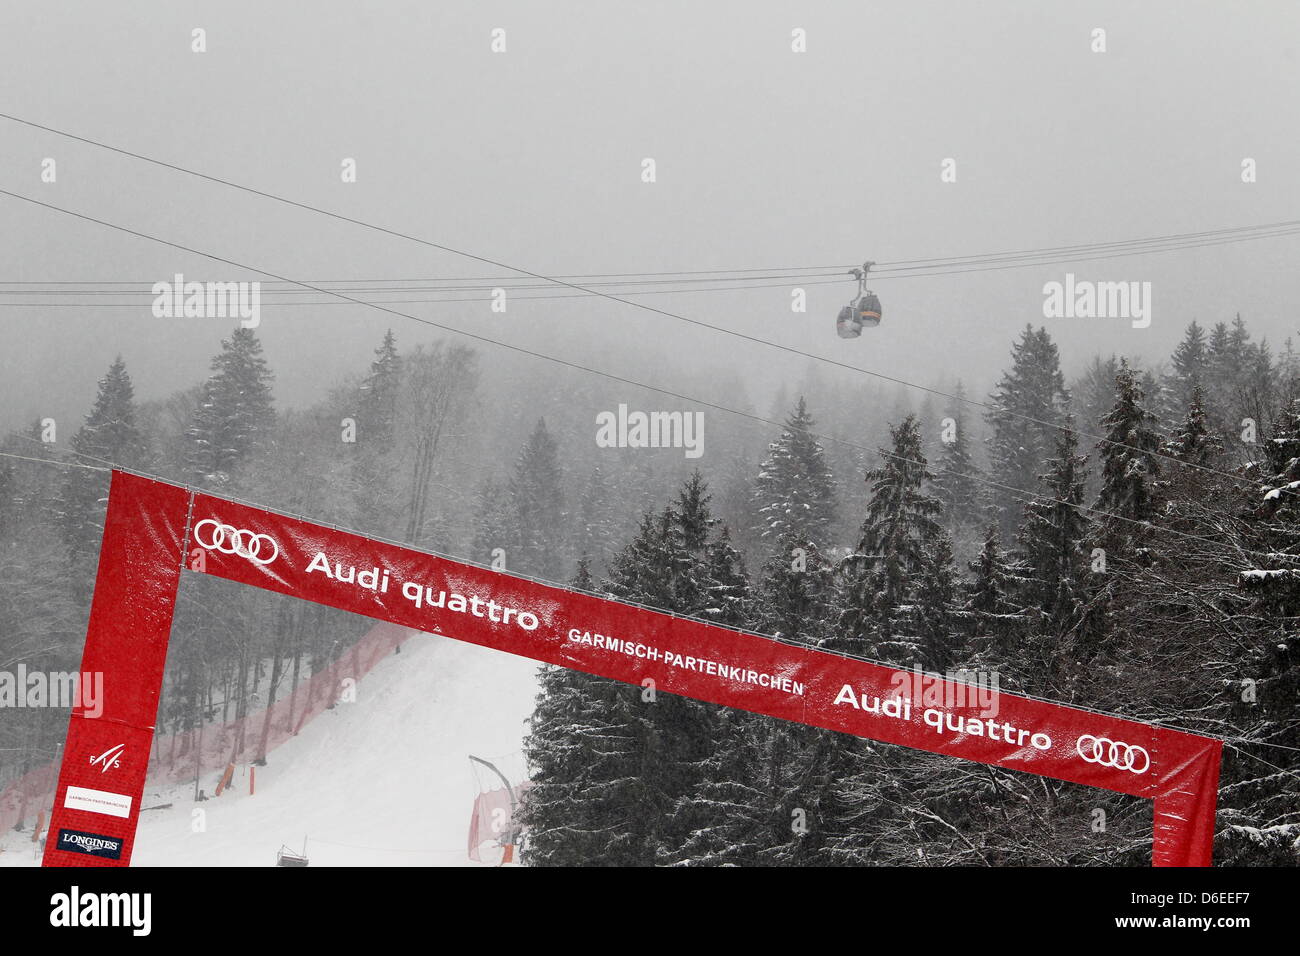 Vor den Herren downhill-Rennen der Kletterübungen Ski World Cup liegt die Kandahar-Strecke in Nebel in Garmisch-Partenkirchen, Deutschland, 28. Januar 2012. Foto: STEPHAN JANSEN Stockfoto